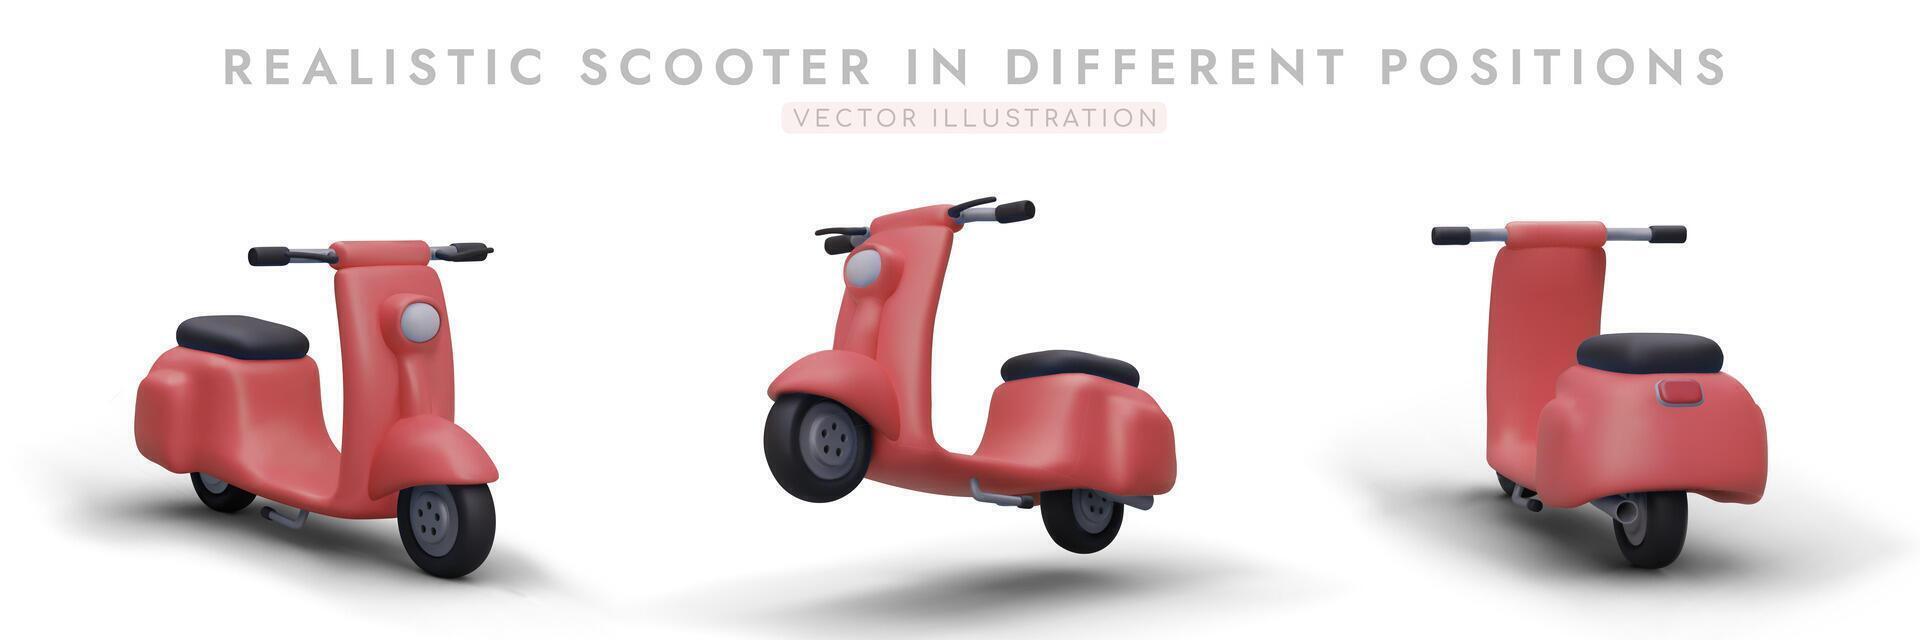 realistisk röd skoter i annorlunda positioner. 3d moped, främre, sida, bak- se vektor